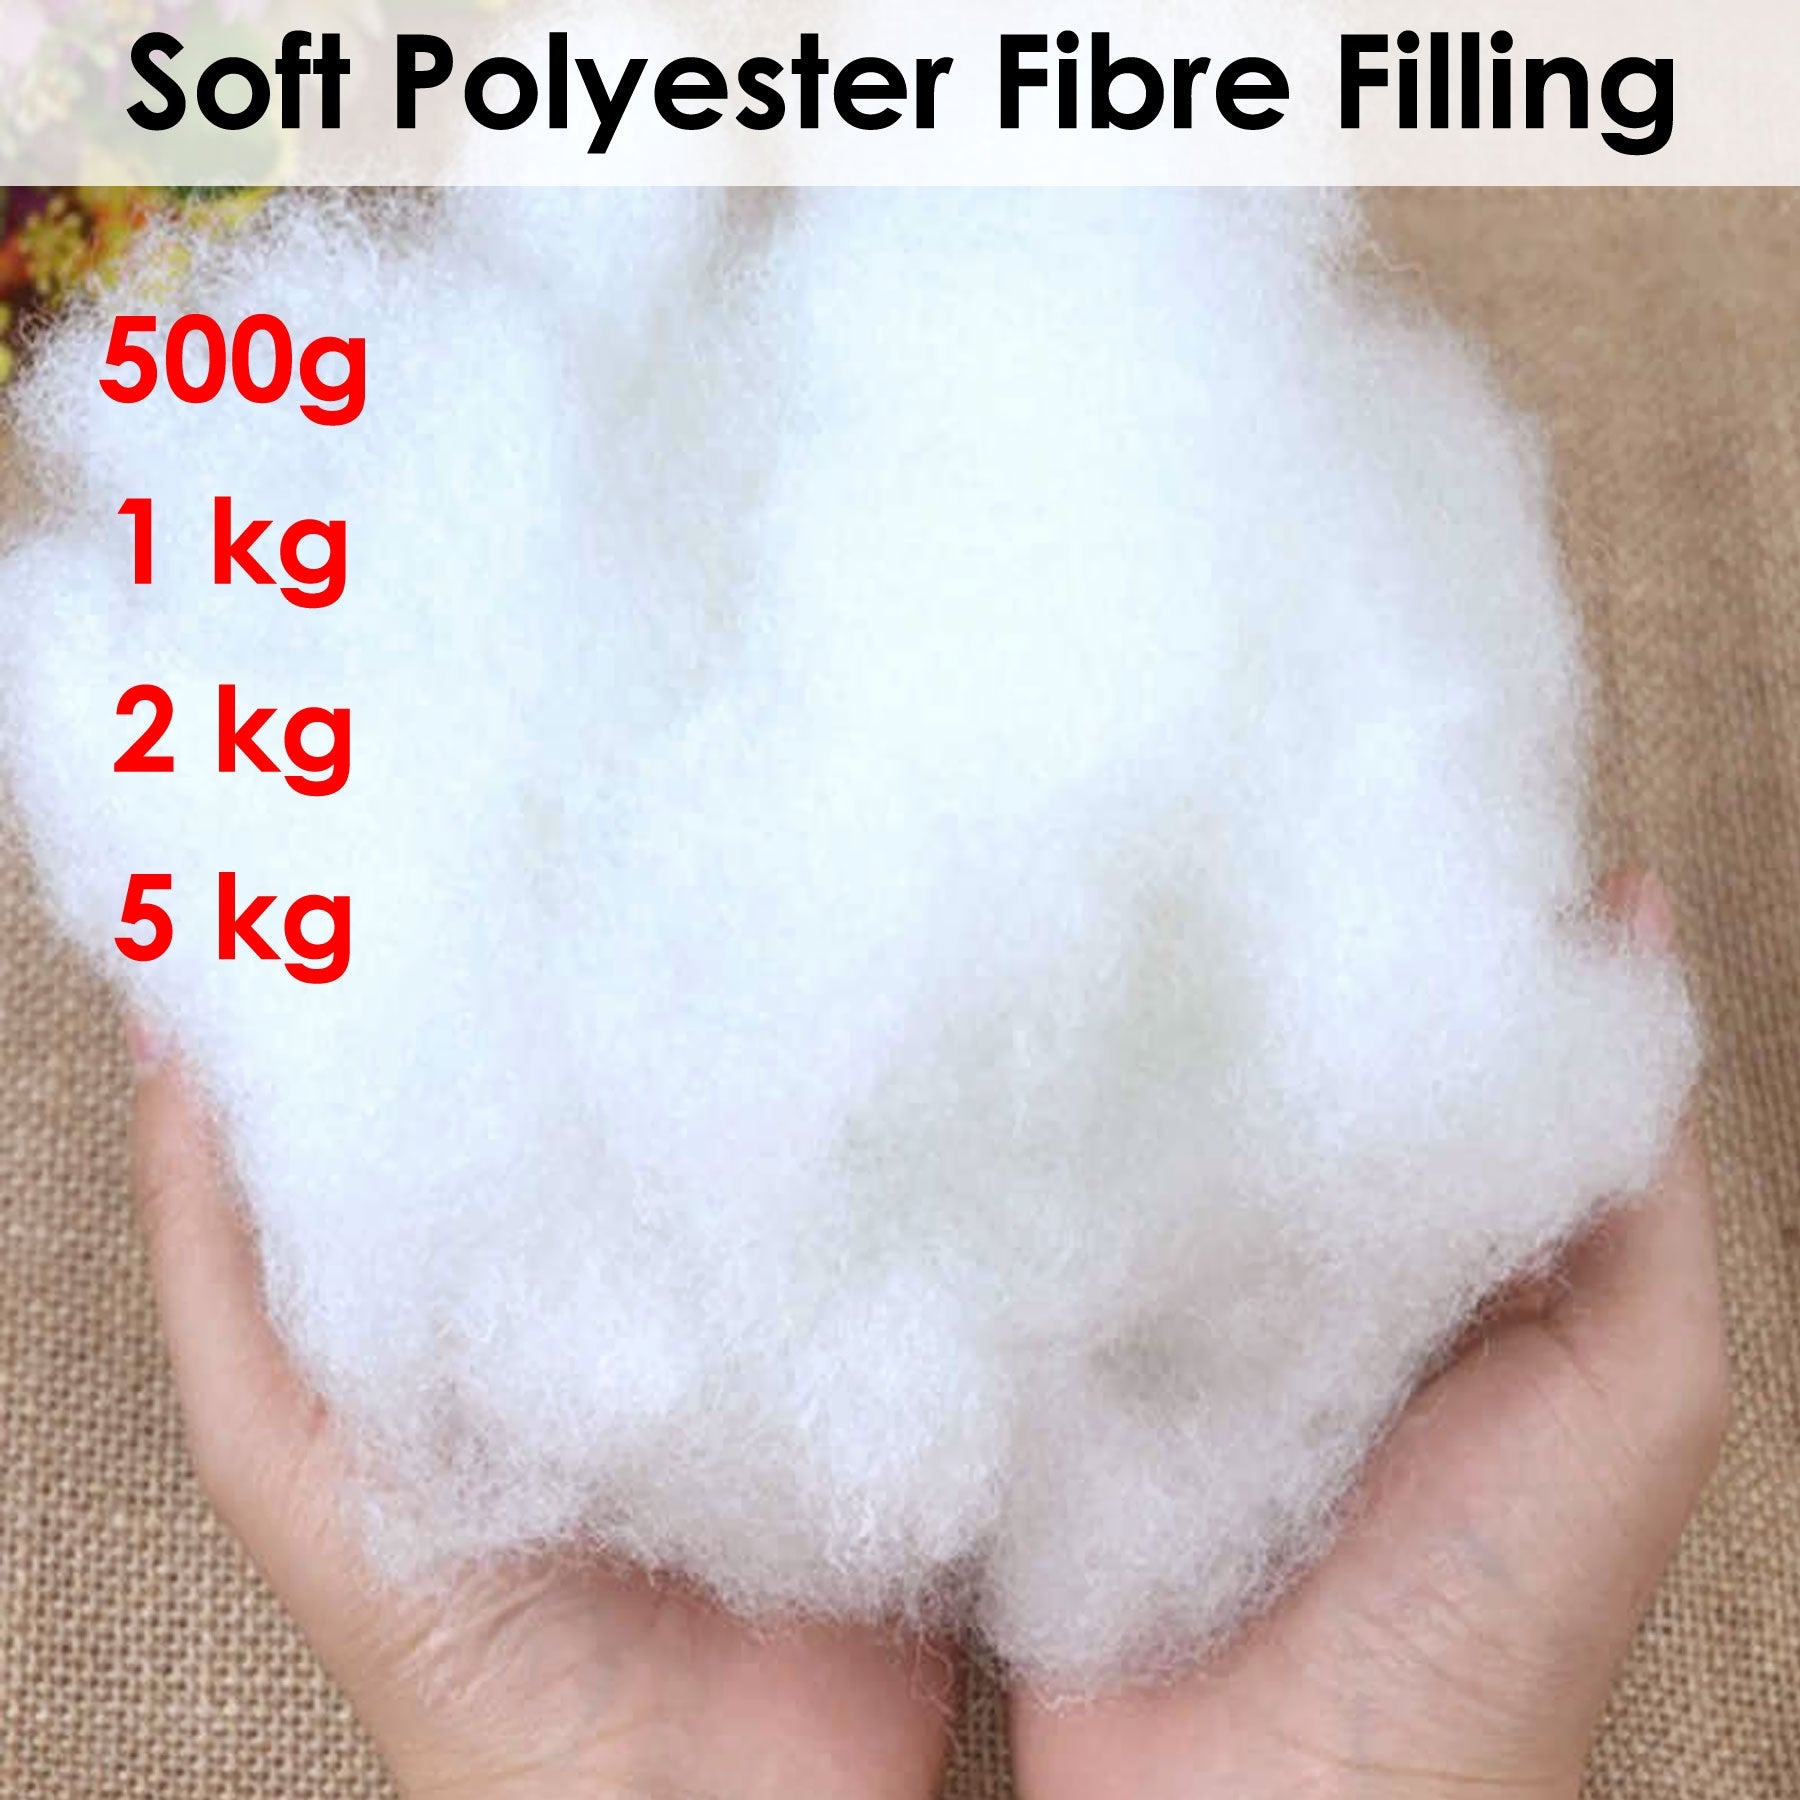 Soft Polyester Fiber Filling 1kg